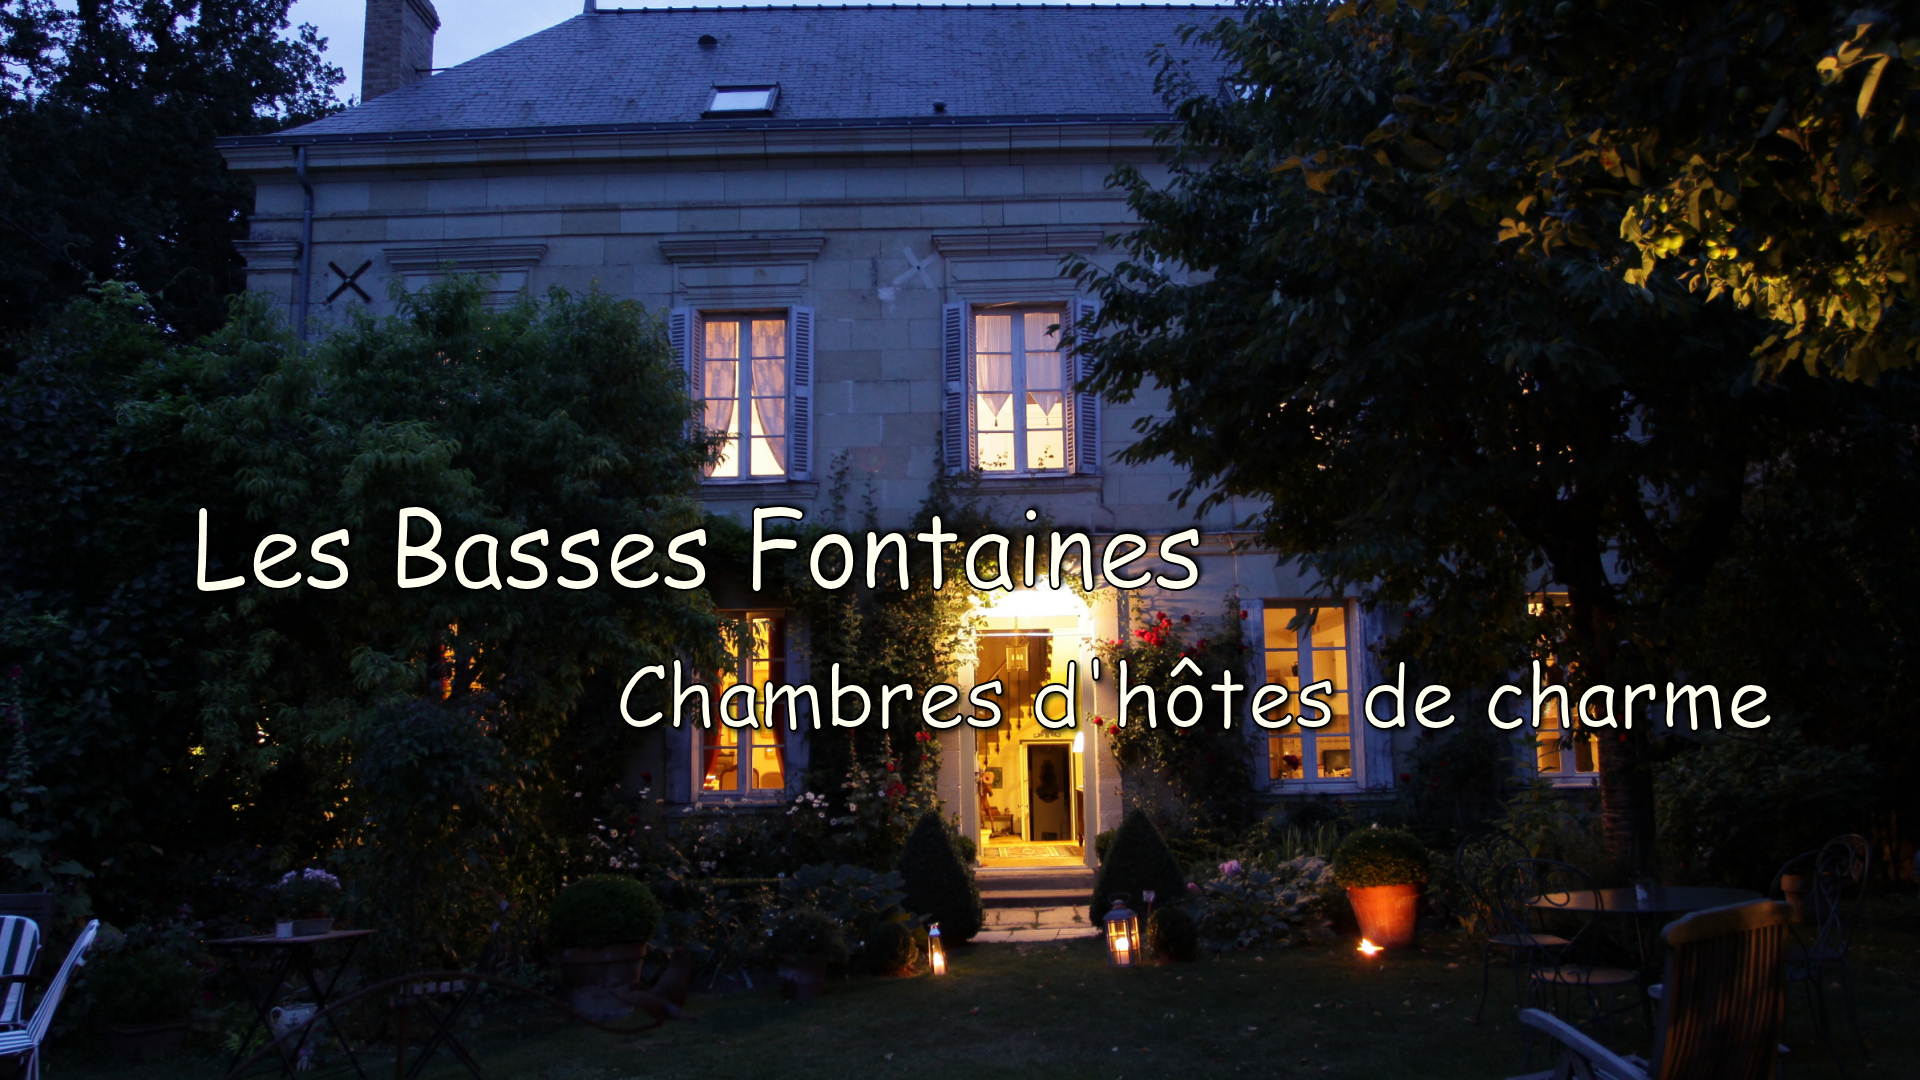 Chambres d'hôtes de charme Les Basses Fontaines